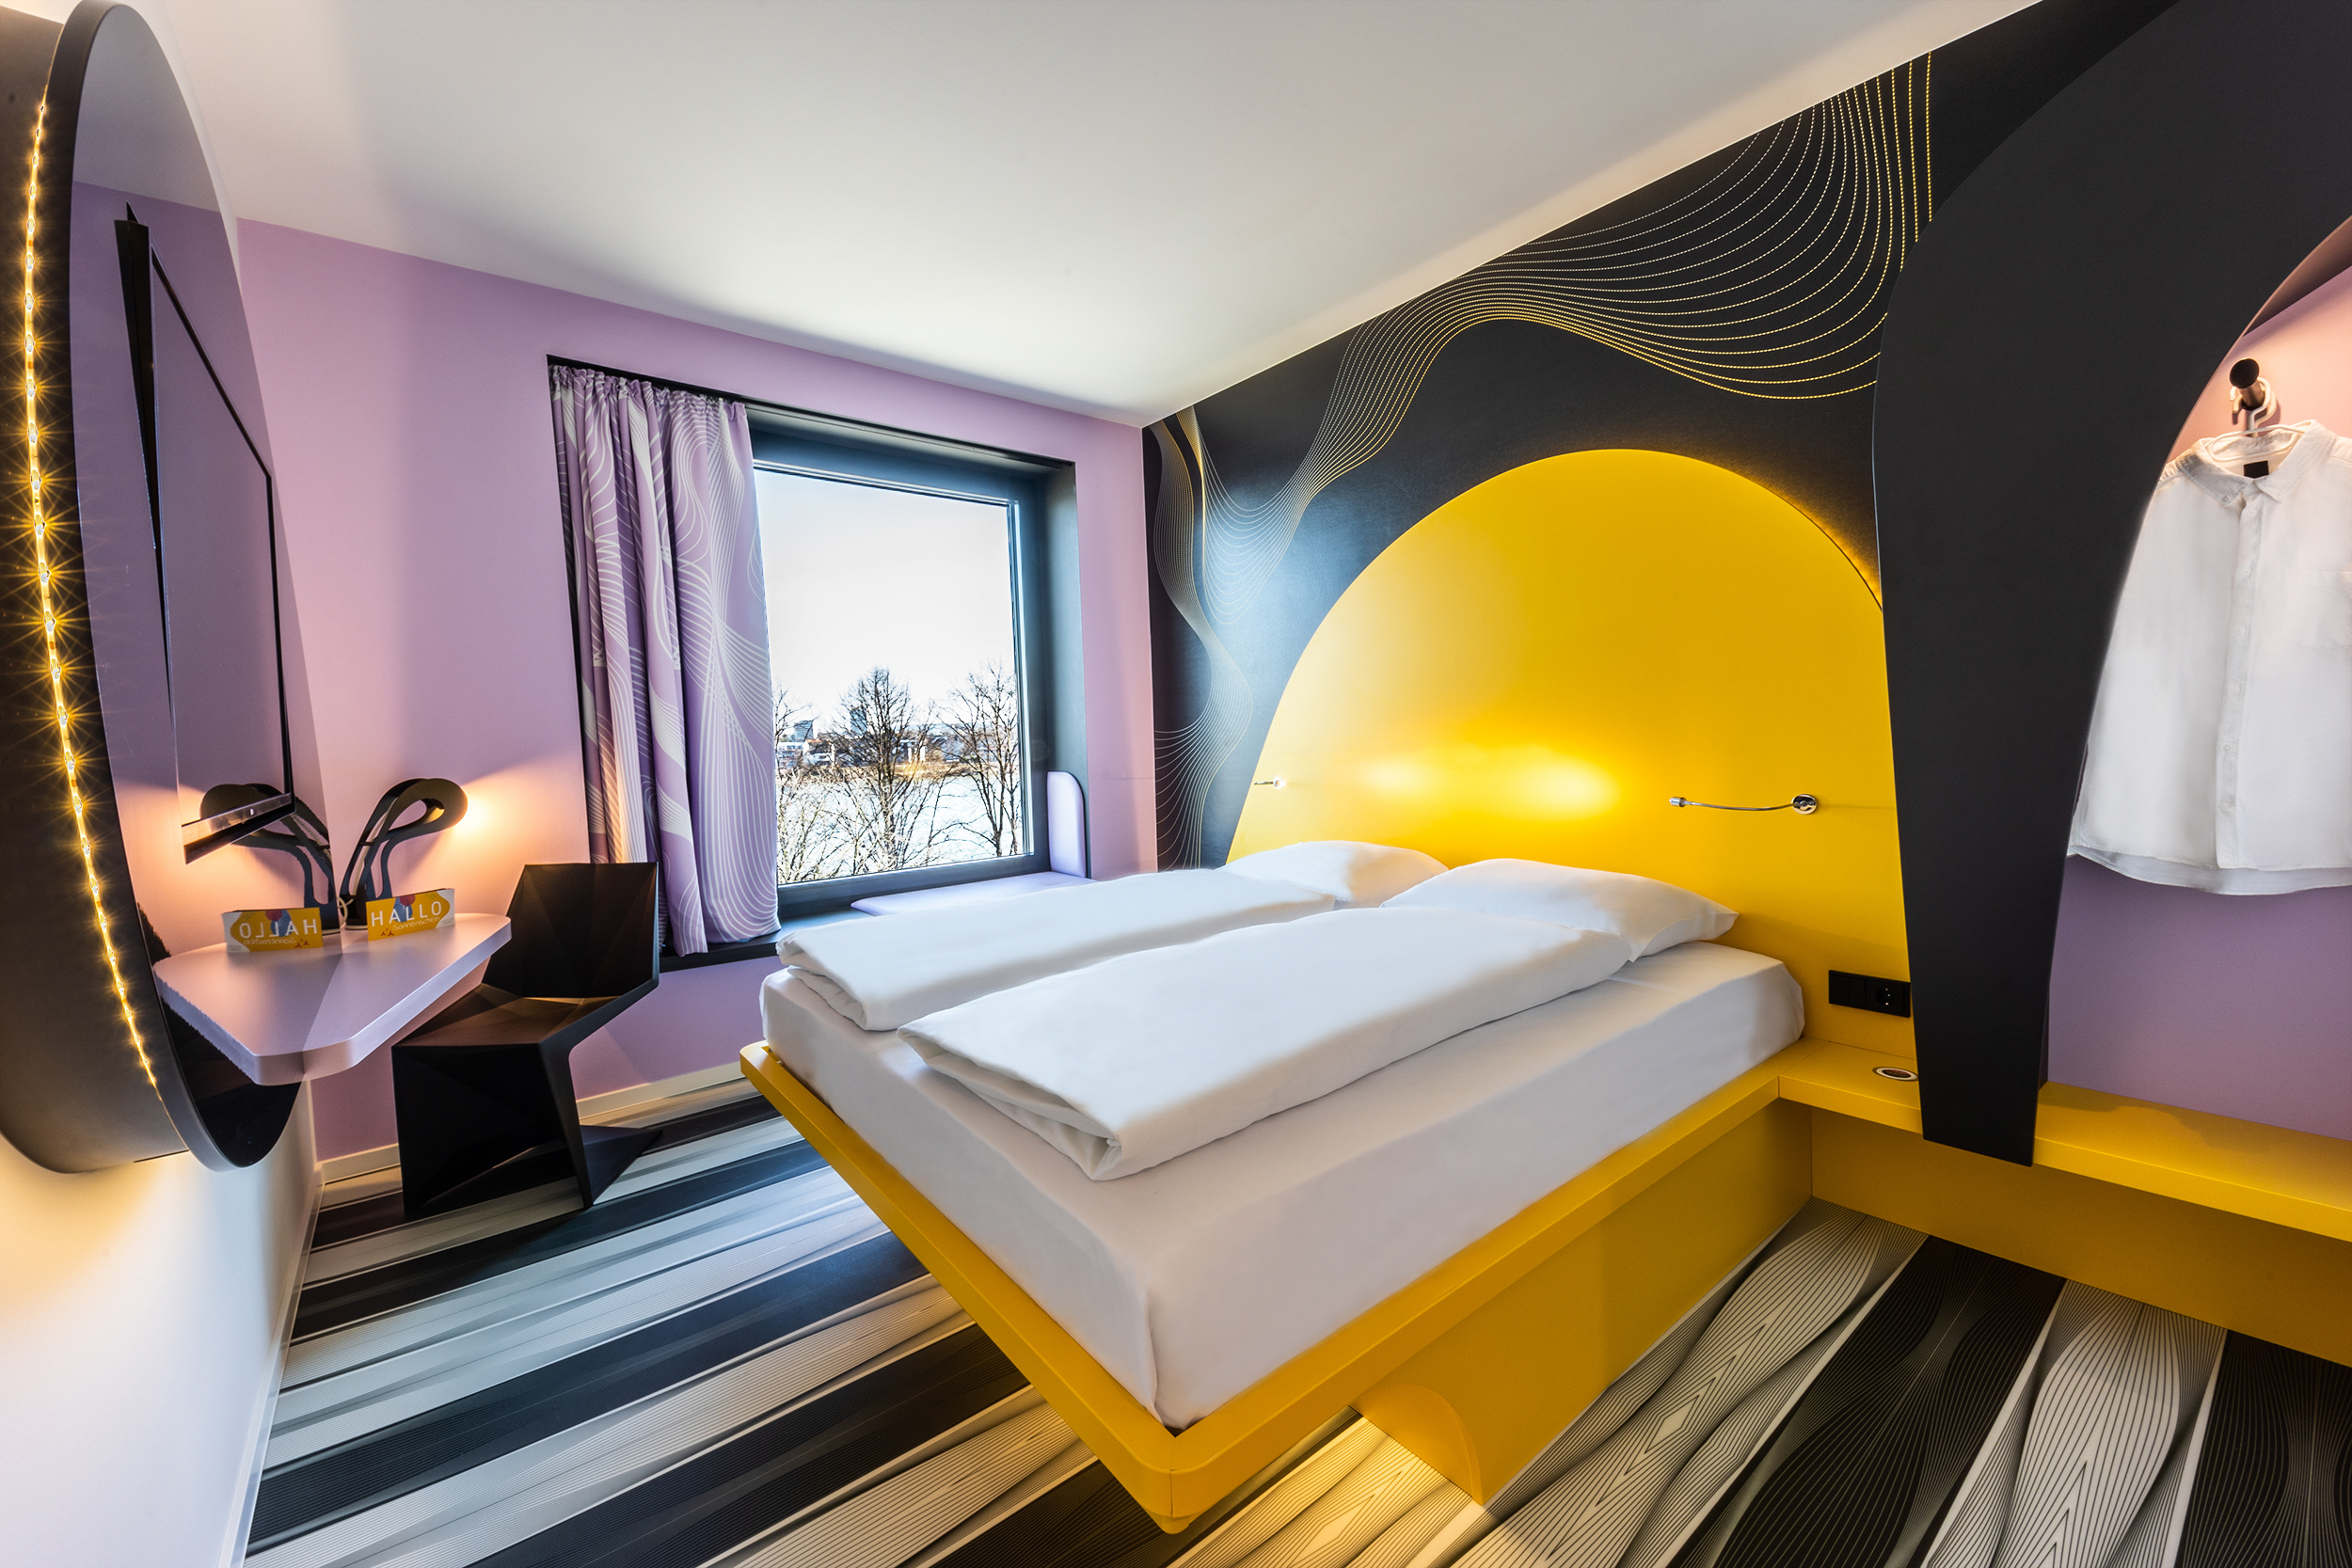 Ein gelb-lila Raum des Hotels mit frisch bezogenem Bett